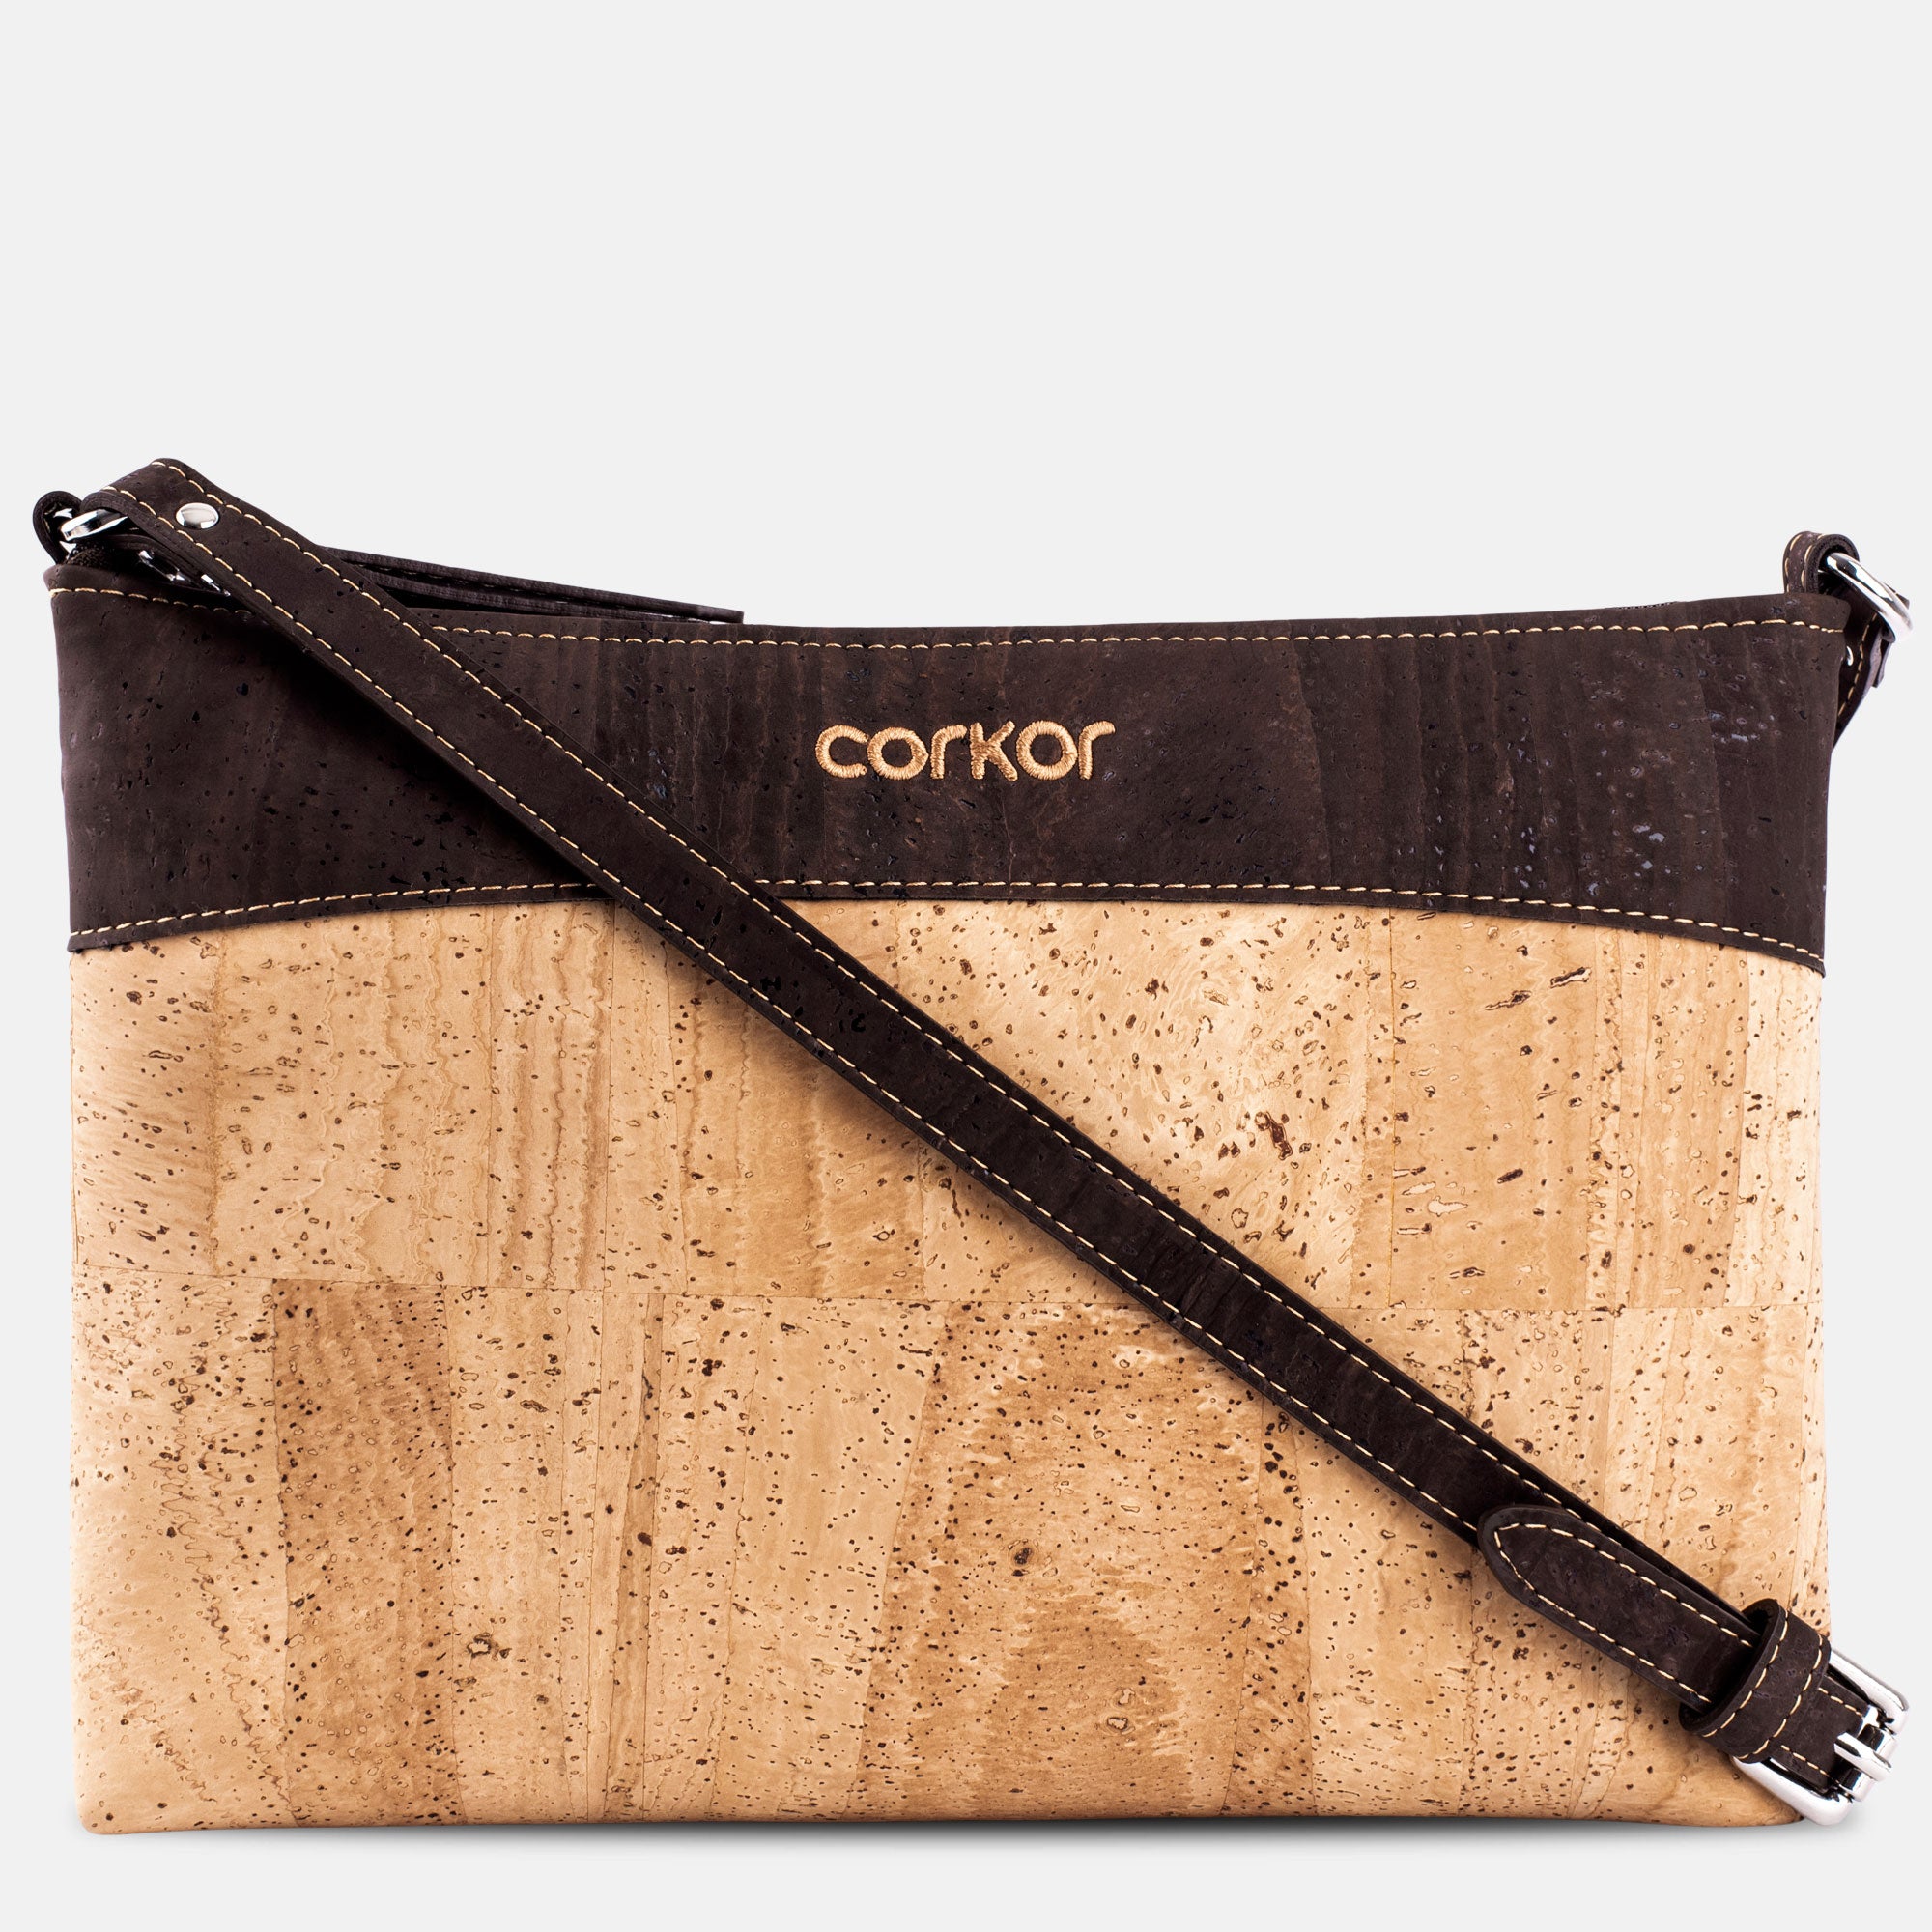 Patterned Cork Handbag